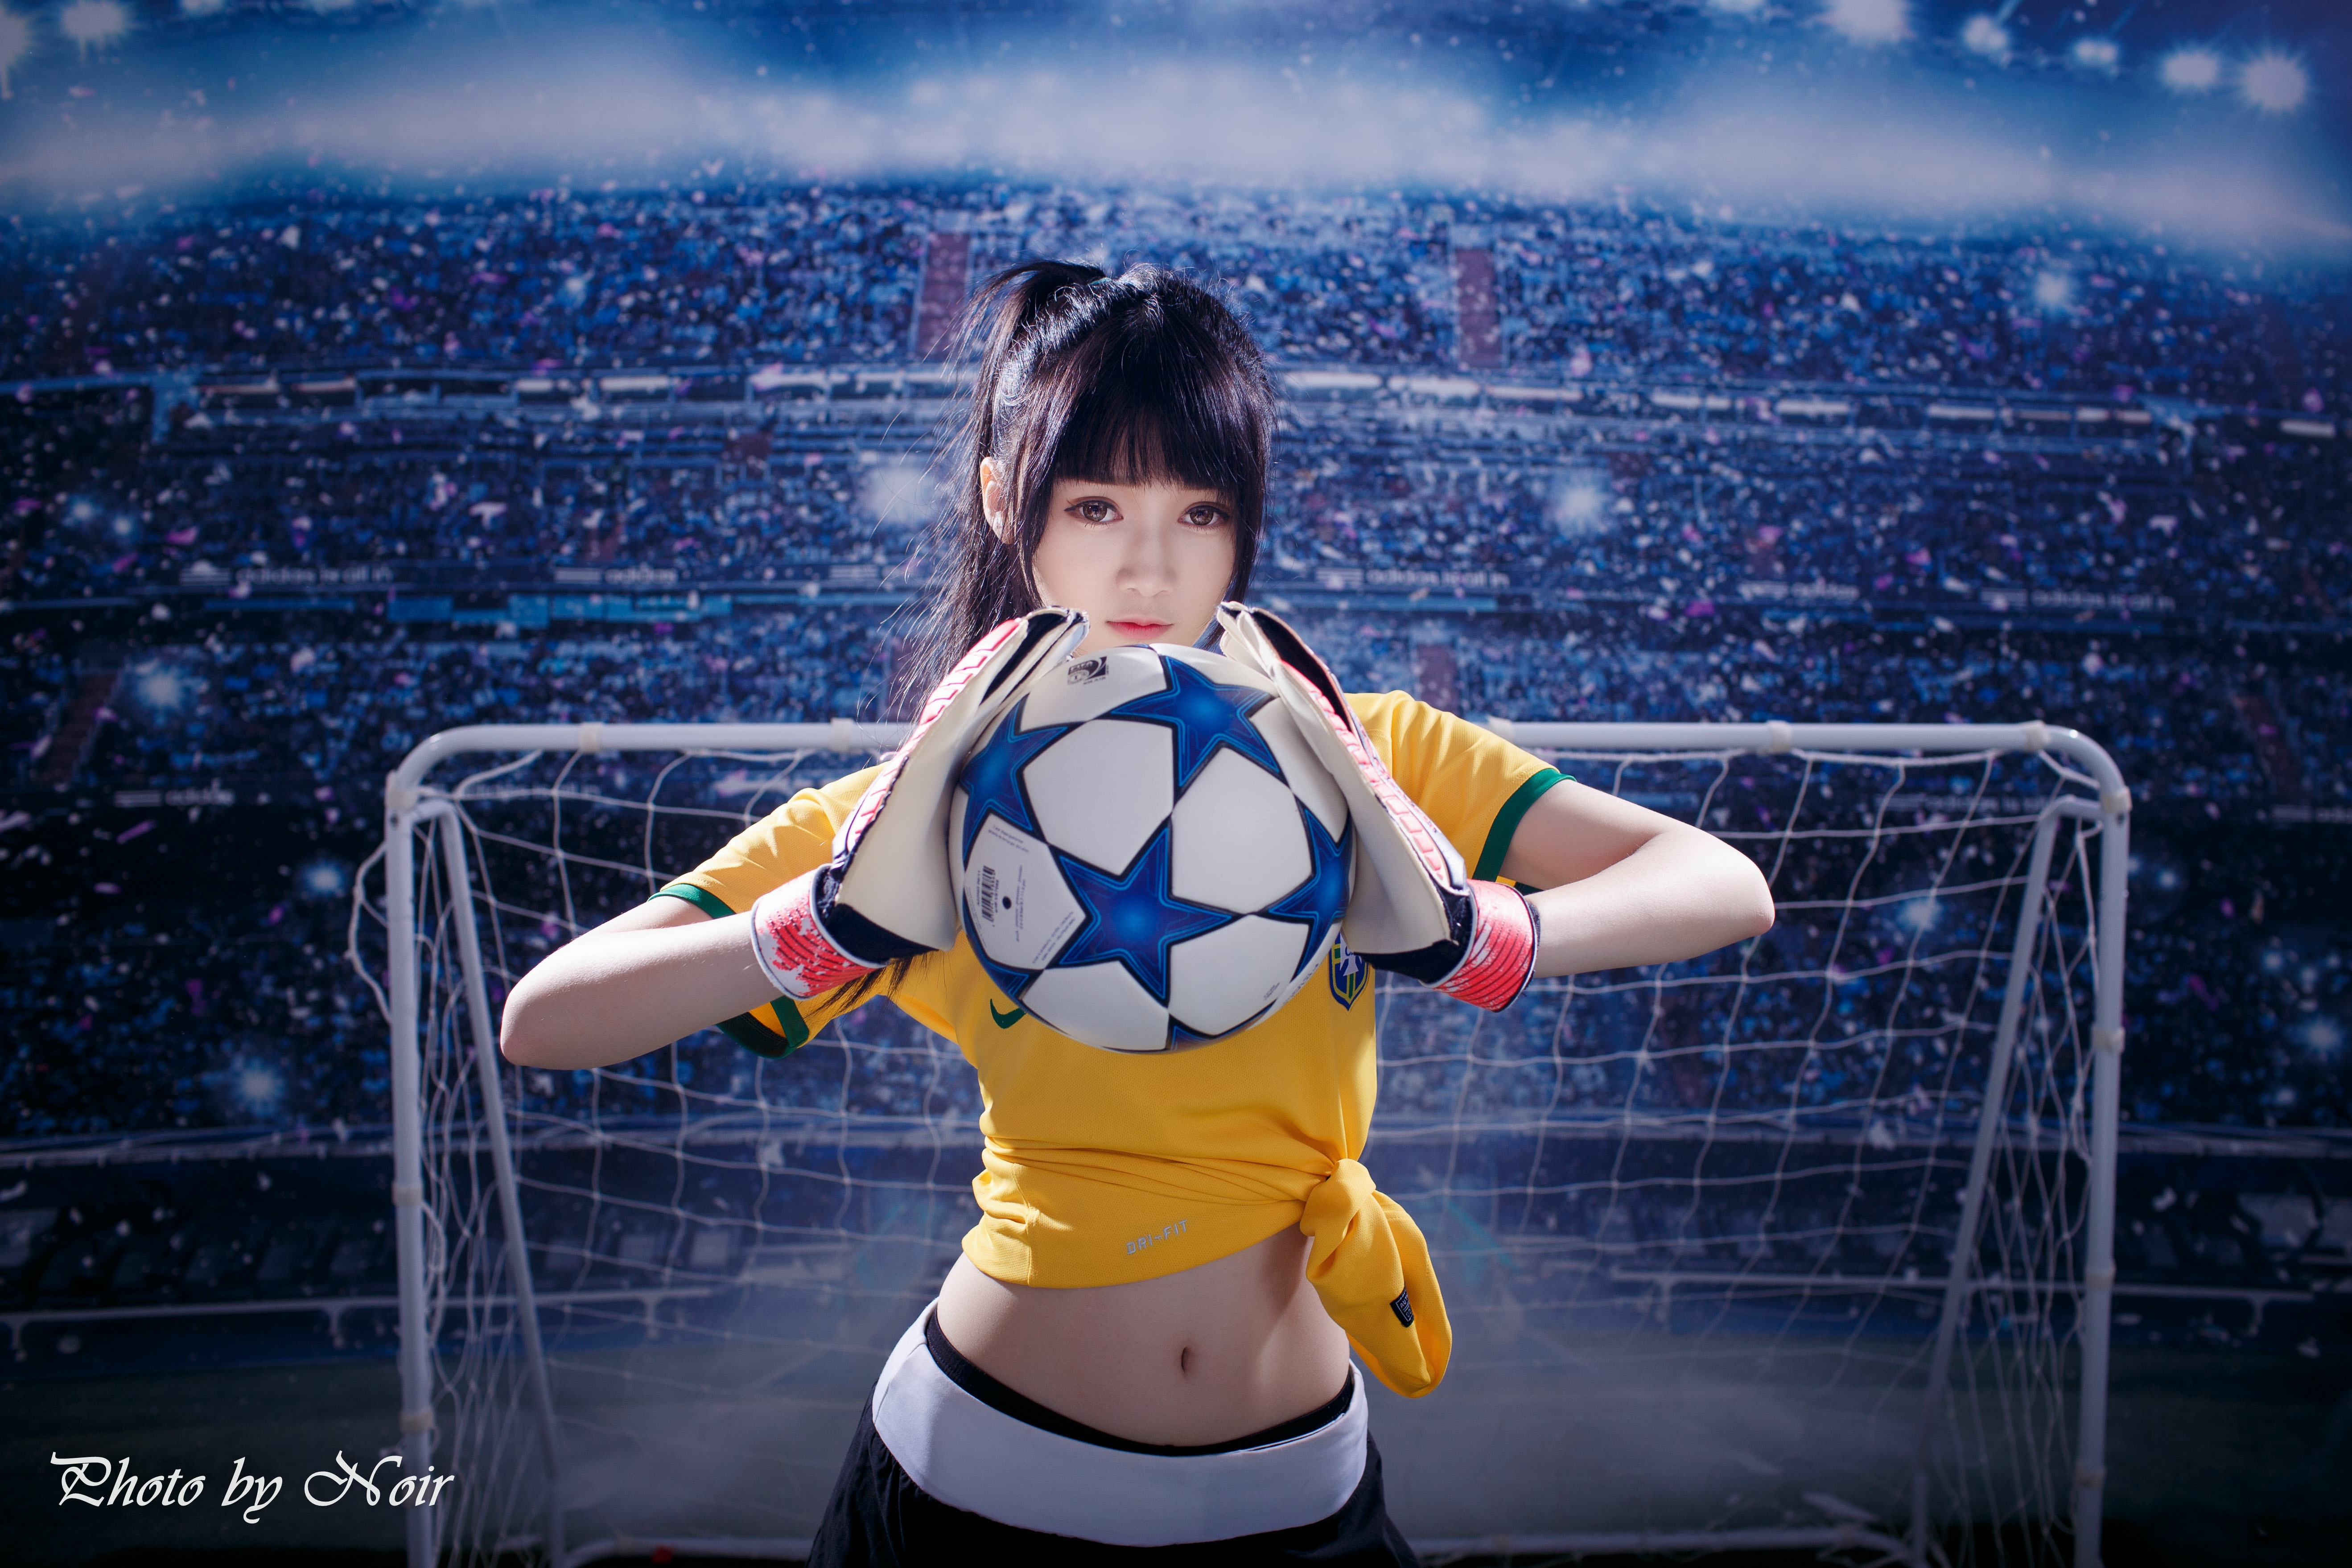 Asian Women Brunette Soccer Soccer Girls 5275x3517